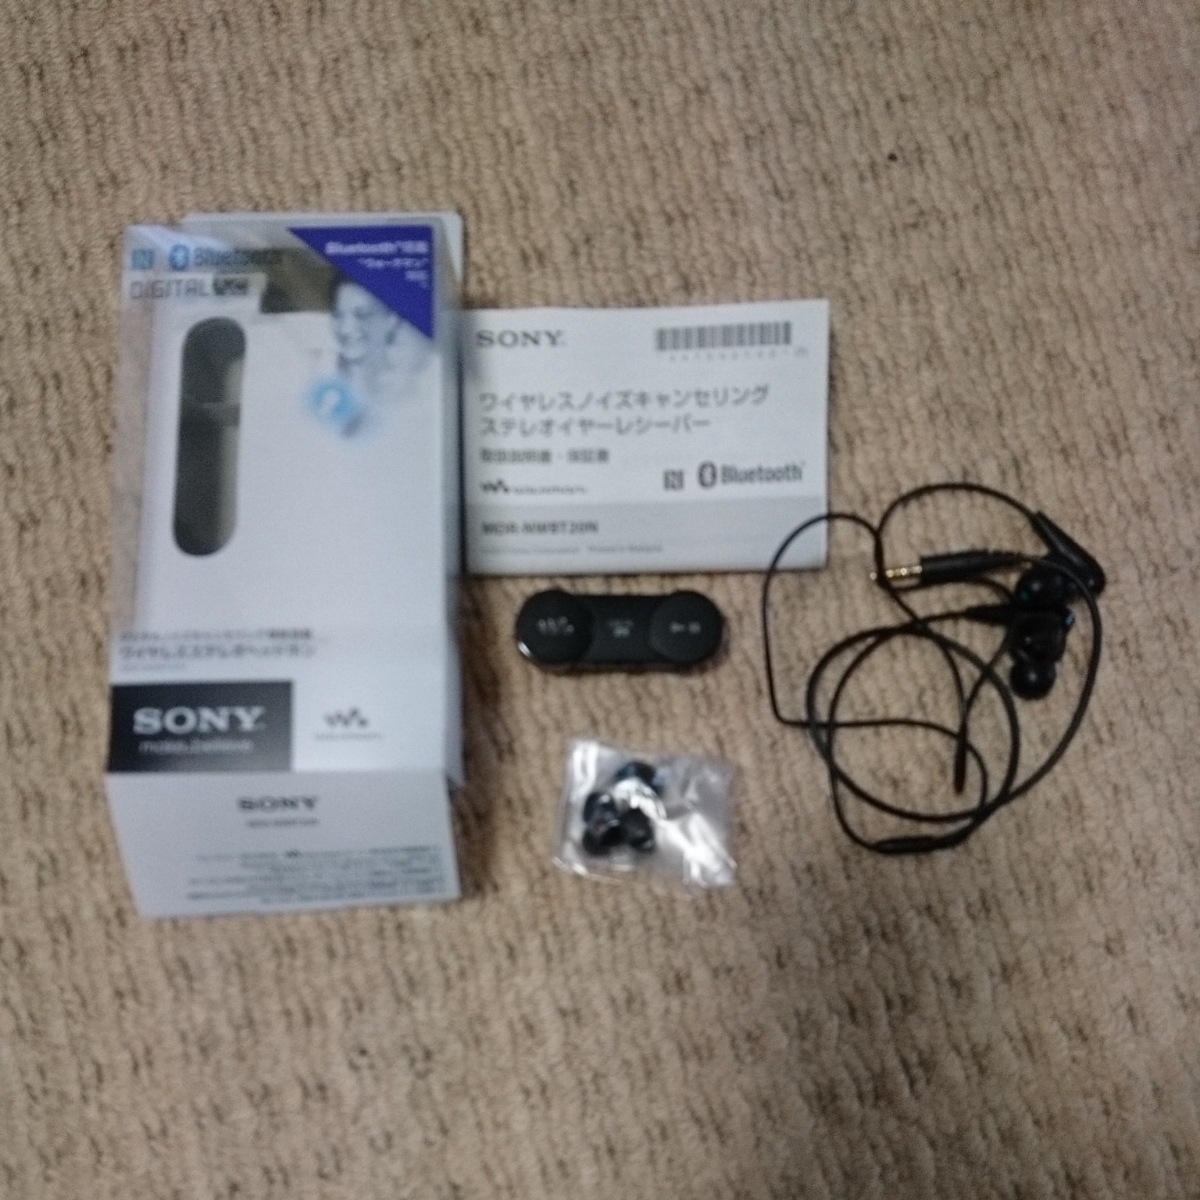 mdr-nwbt 20n索尼SONY無線降噪立體聲耳機接收器藍牙    原文:mdr-nwbt20n ソニー SONY ワイヤレスノイズキャンセリングステレオイヤーレシーバー Bluetooth